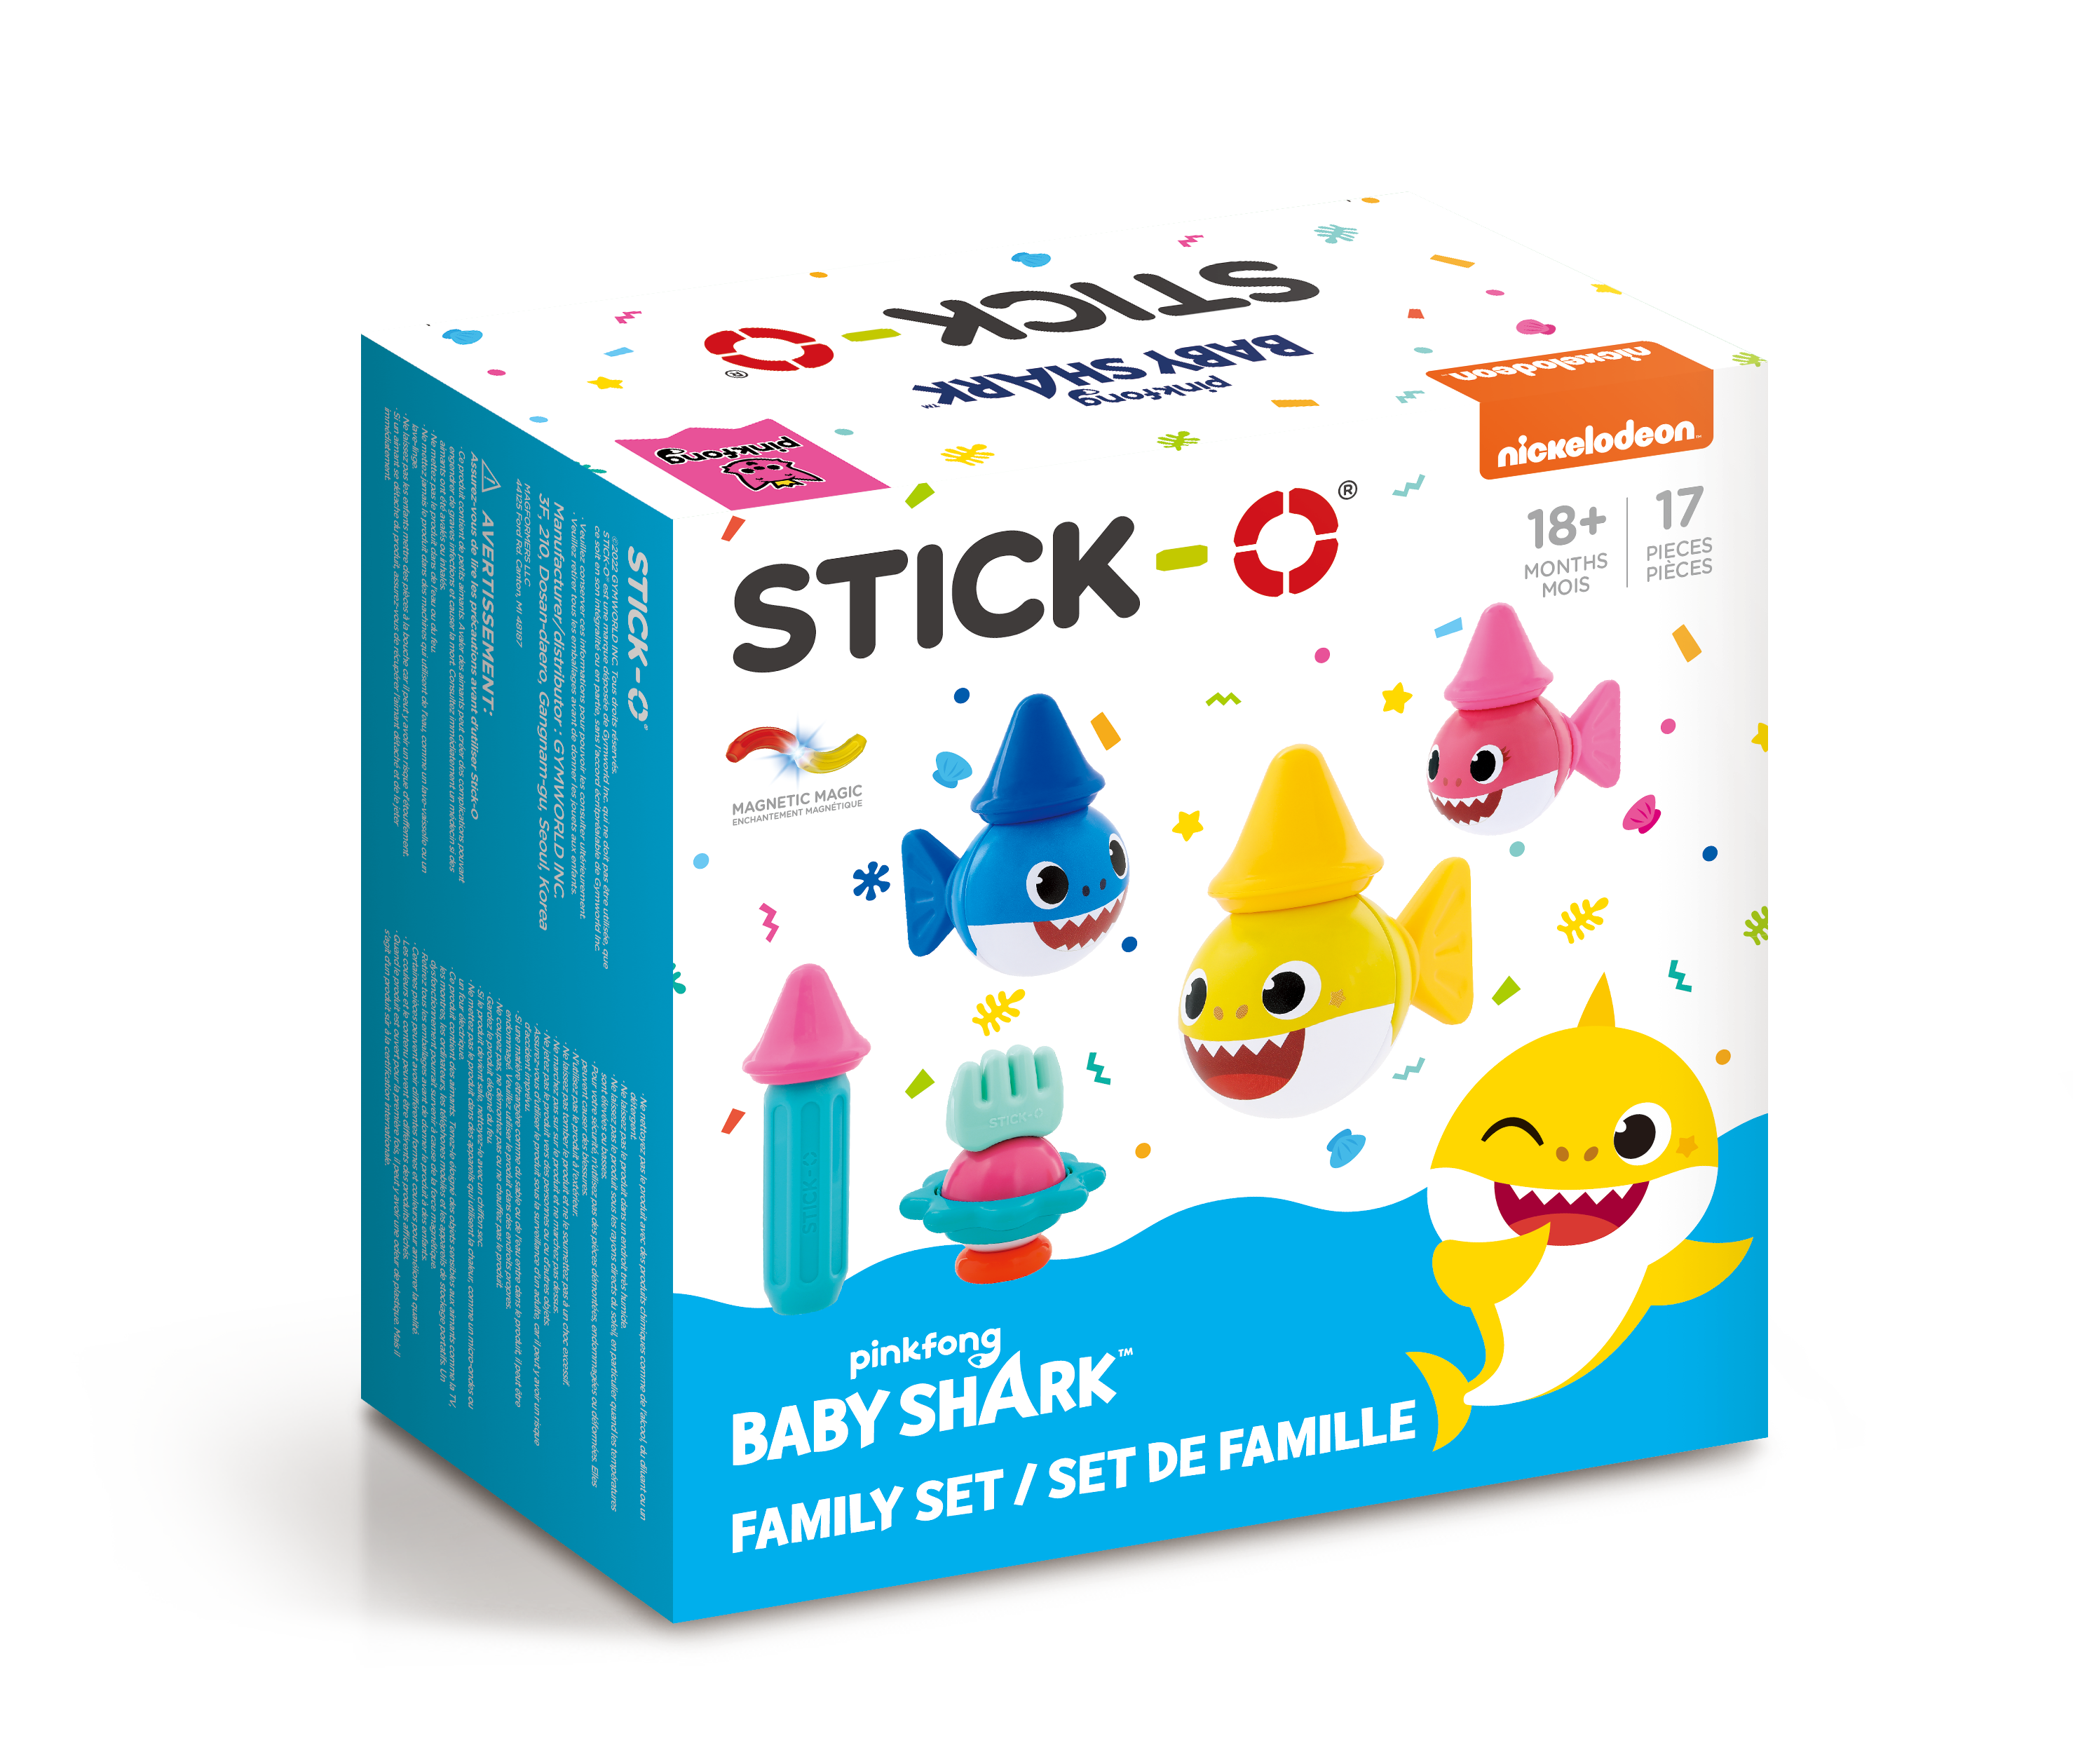 STICK-O Baby Shark Family 17 PC